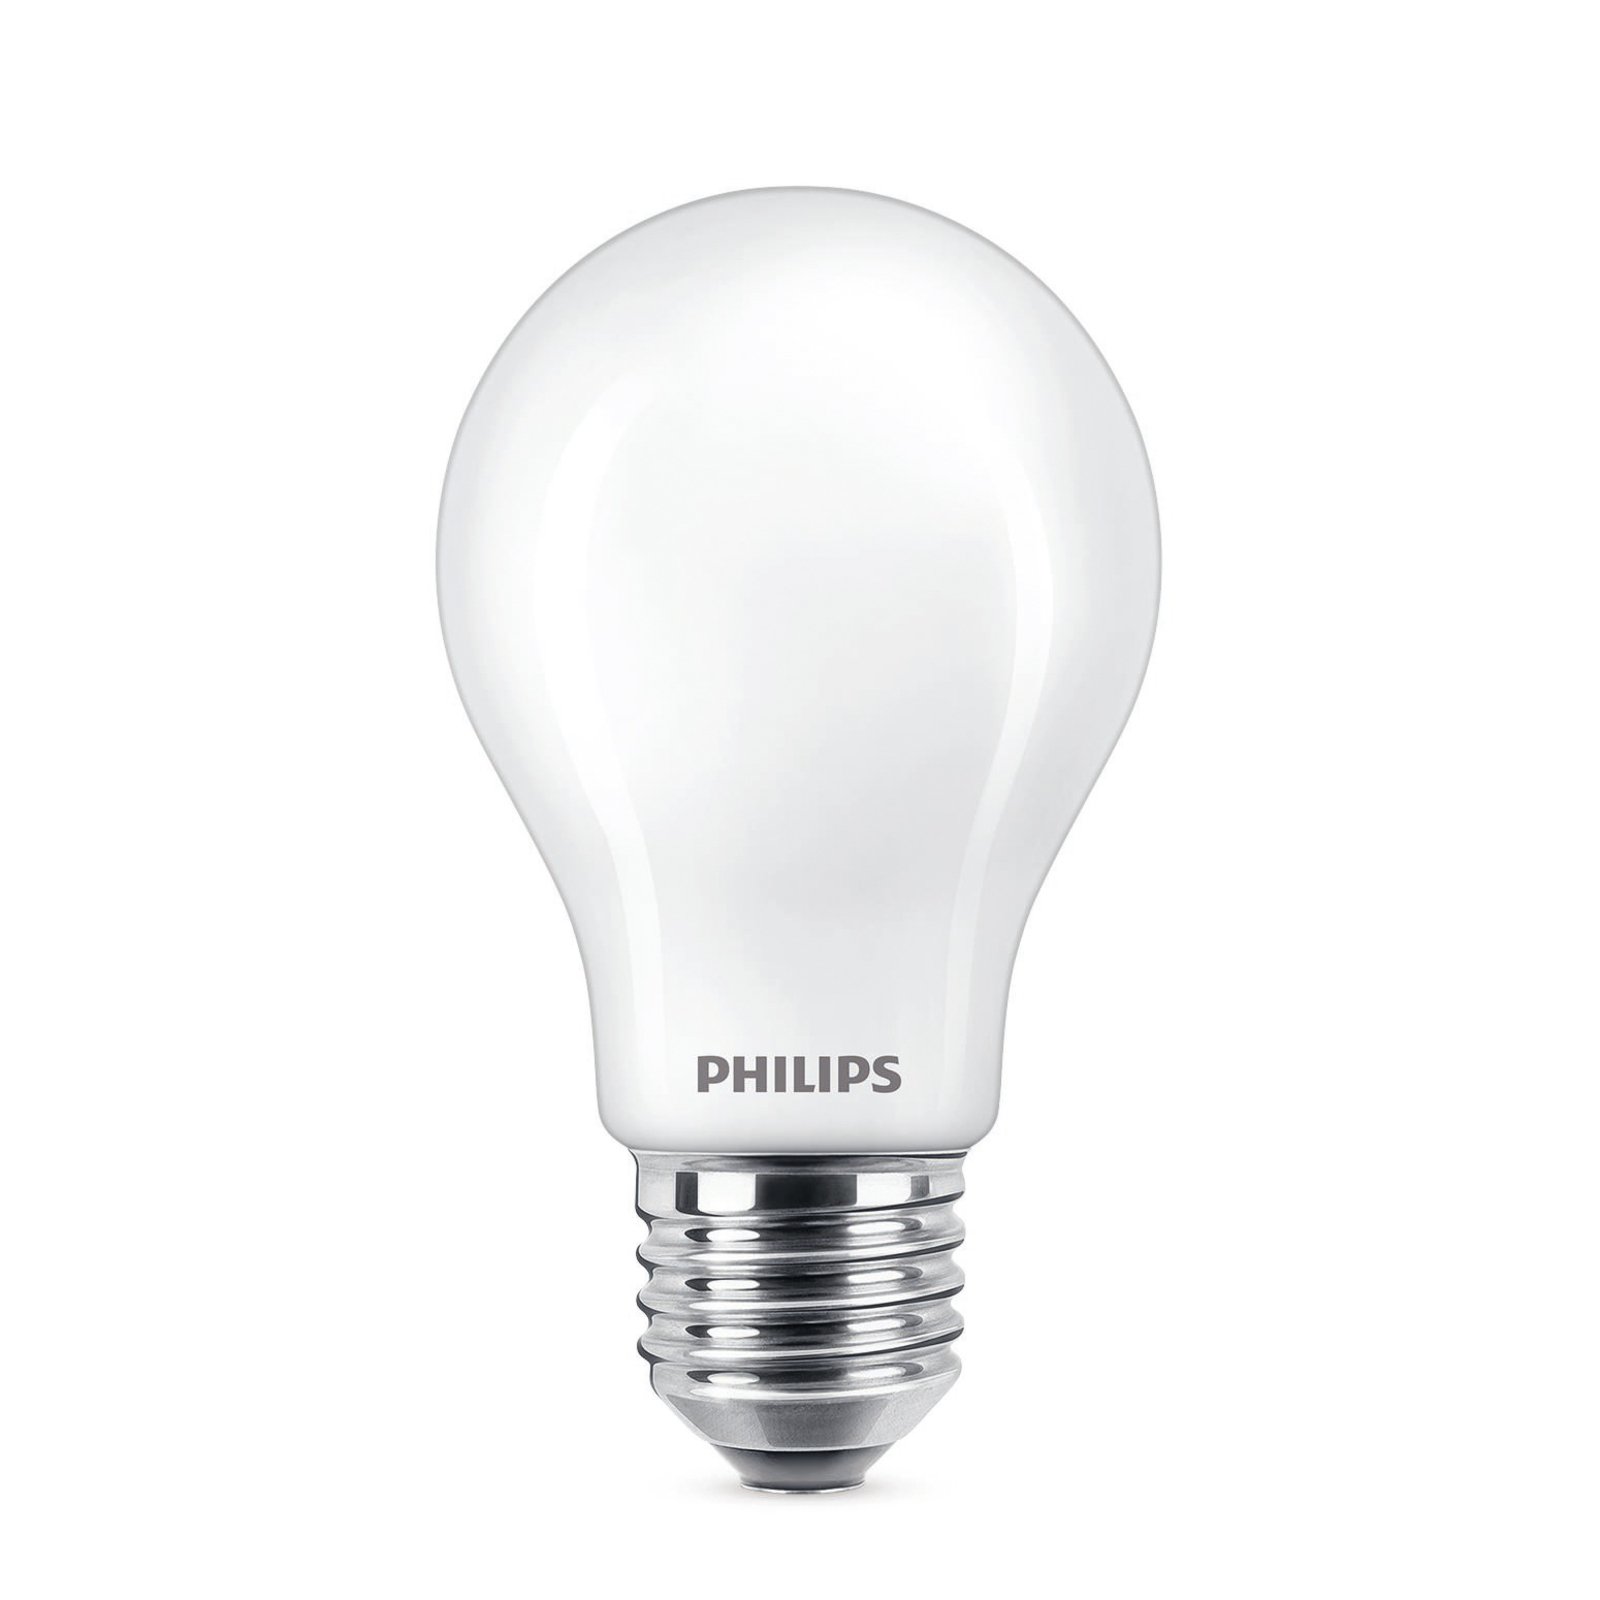 Philips LED žiarovka E27 7W 806lm 2700K matná 2 ks